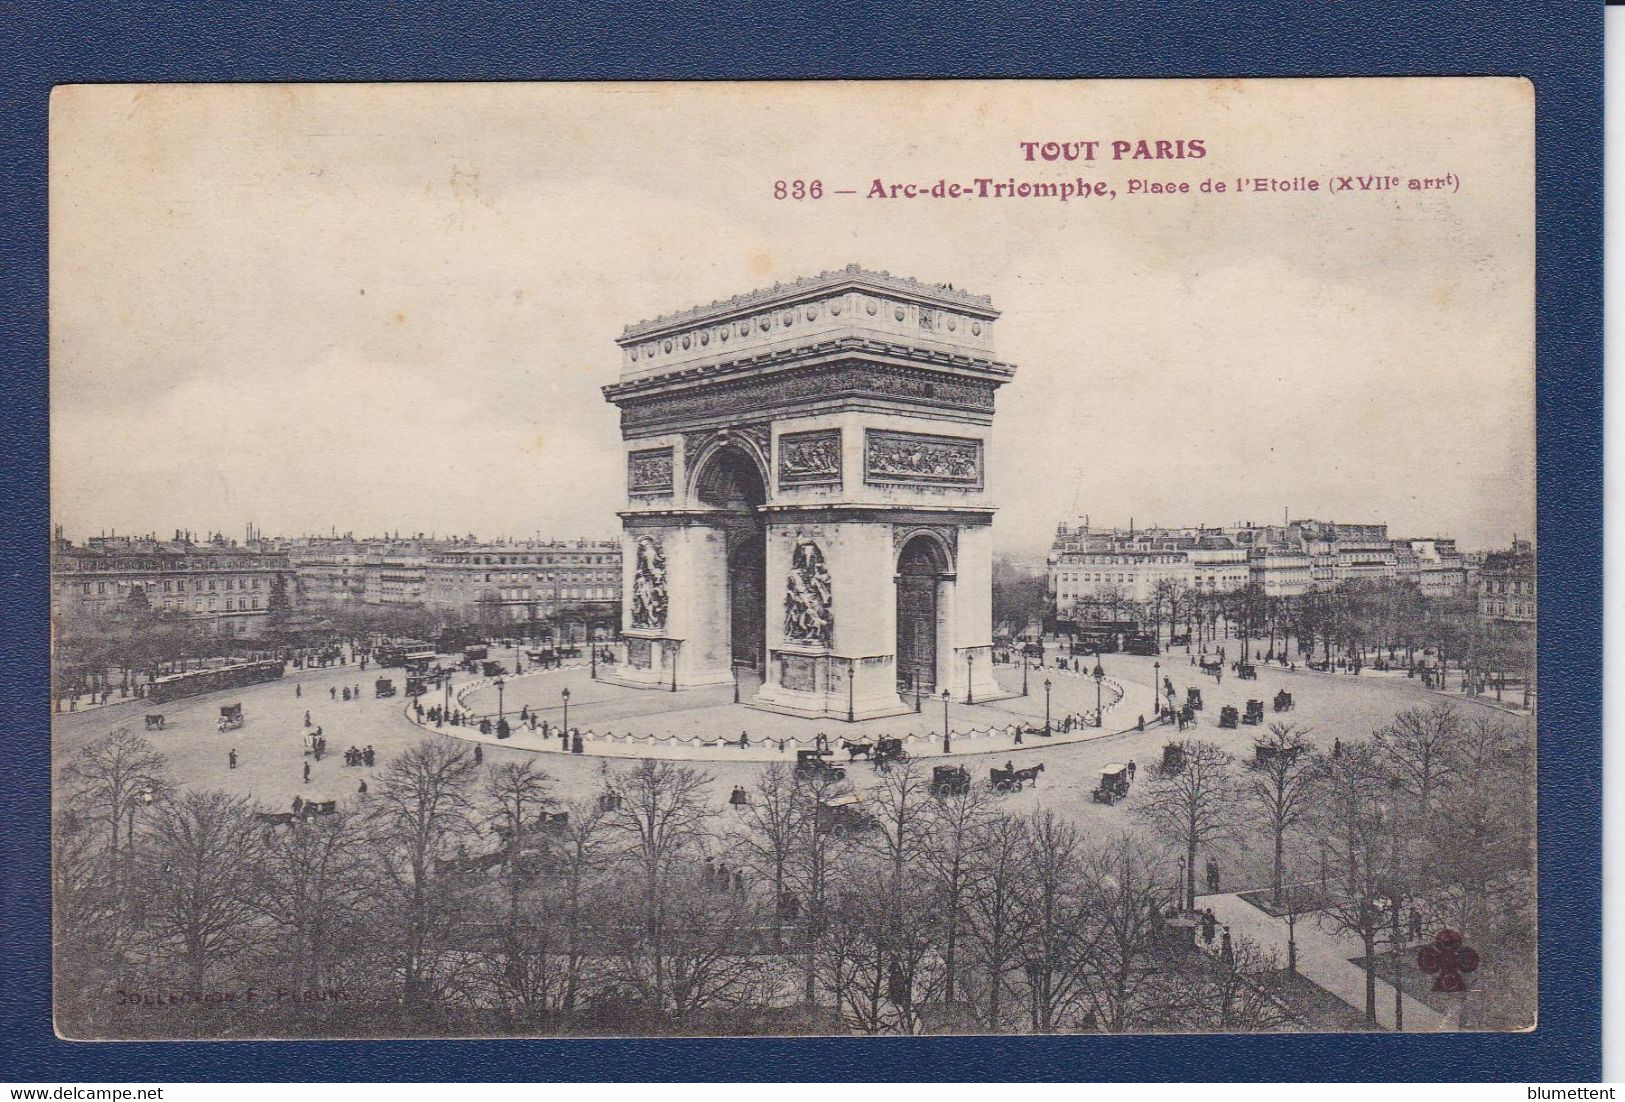 CPA [75] Paris > Série Tout Paris N° 836 Circulé - Sets And Collections